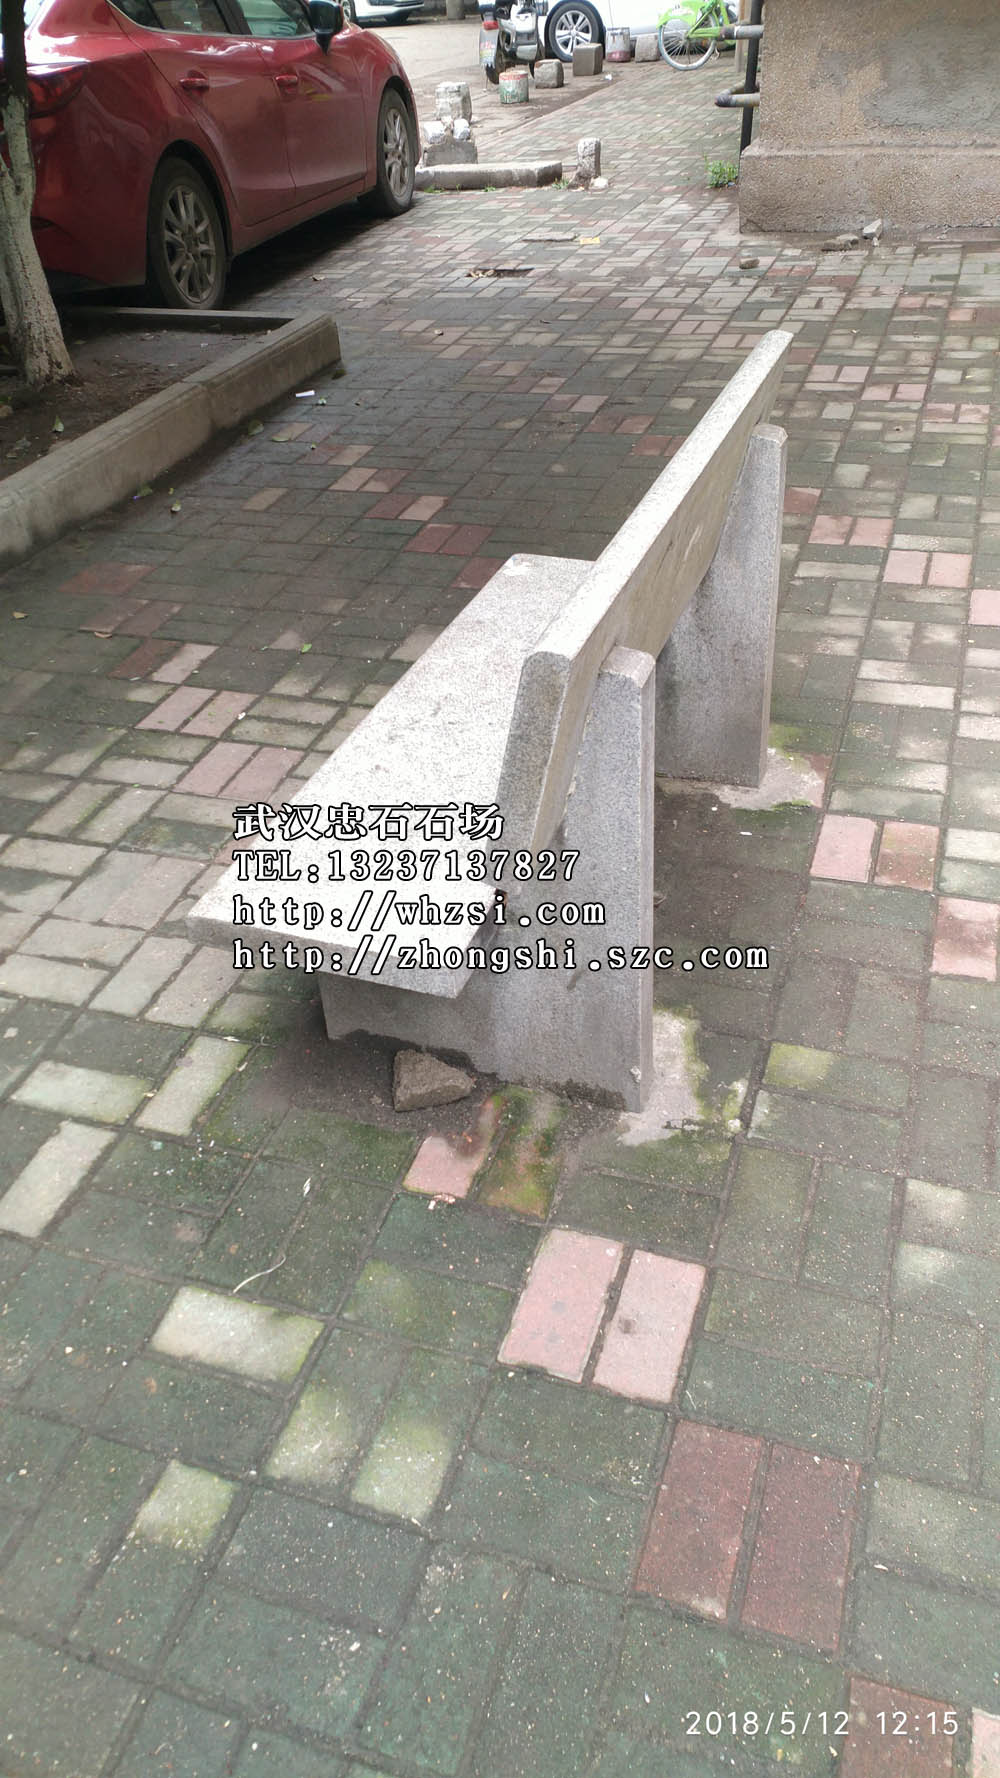 武汉风水石球石狮子产品产地-武汉大理石桌石凳石球石狮子设计制作